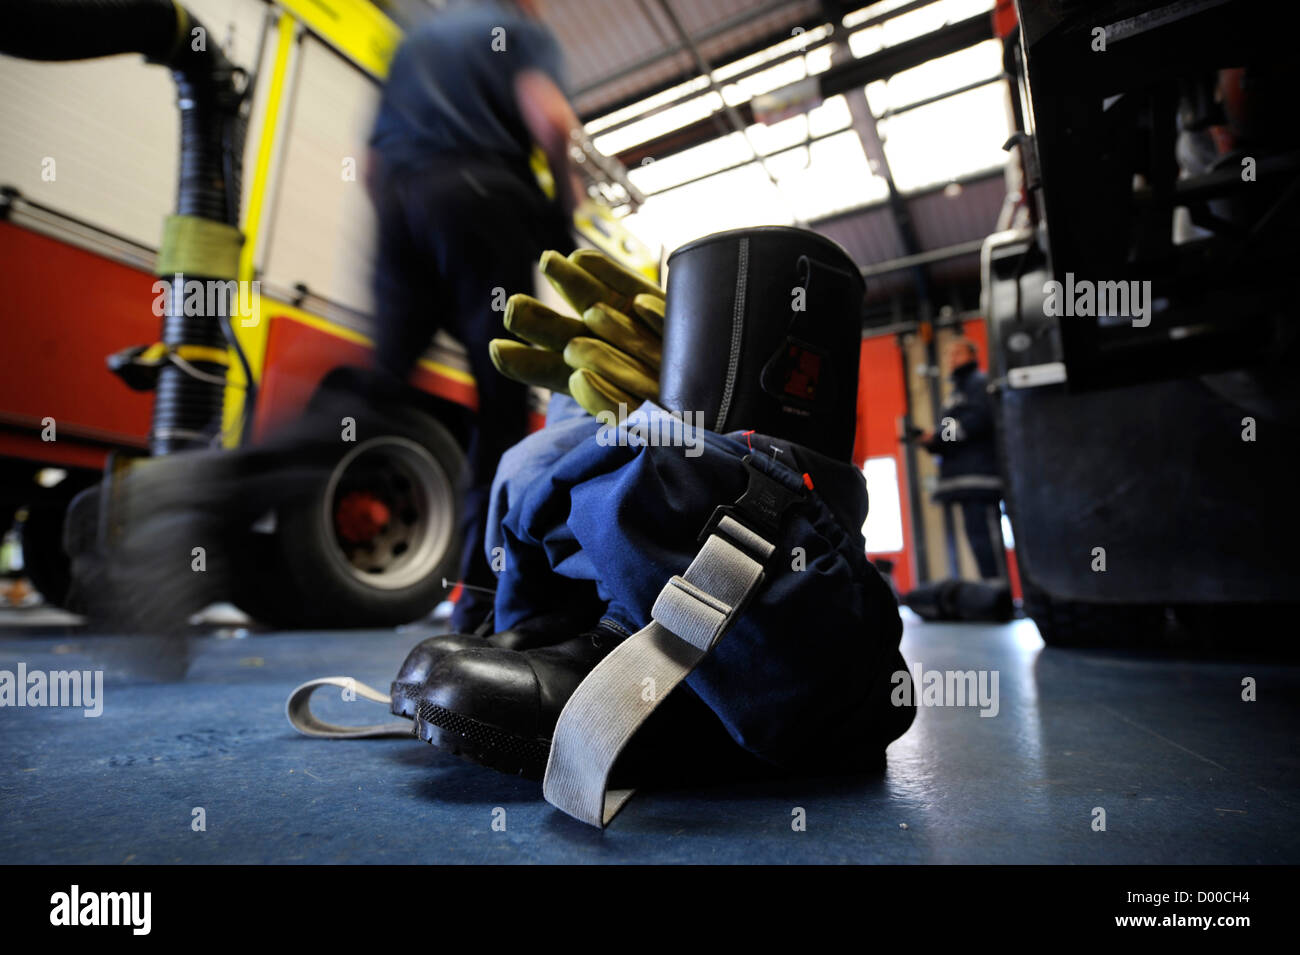 Re Feuerwehrmann weiße Uhr in Pontypridd Feuerwache in S Wales - Feuerwehr Schutzhandschuhe Stiefel und Hose angelegt Stockfoto